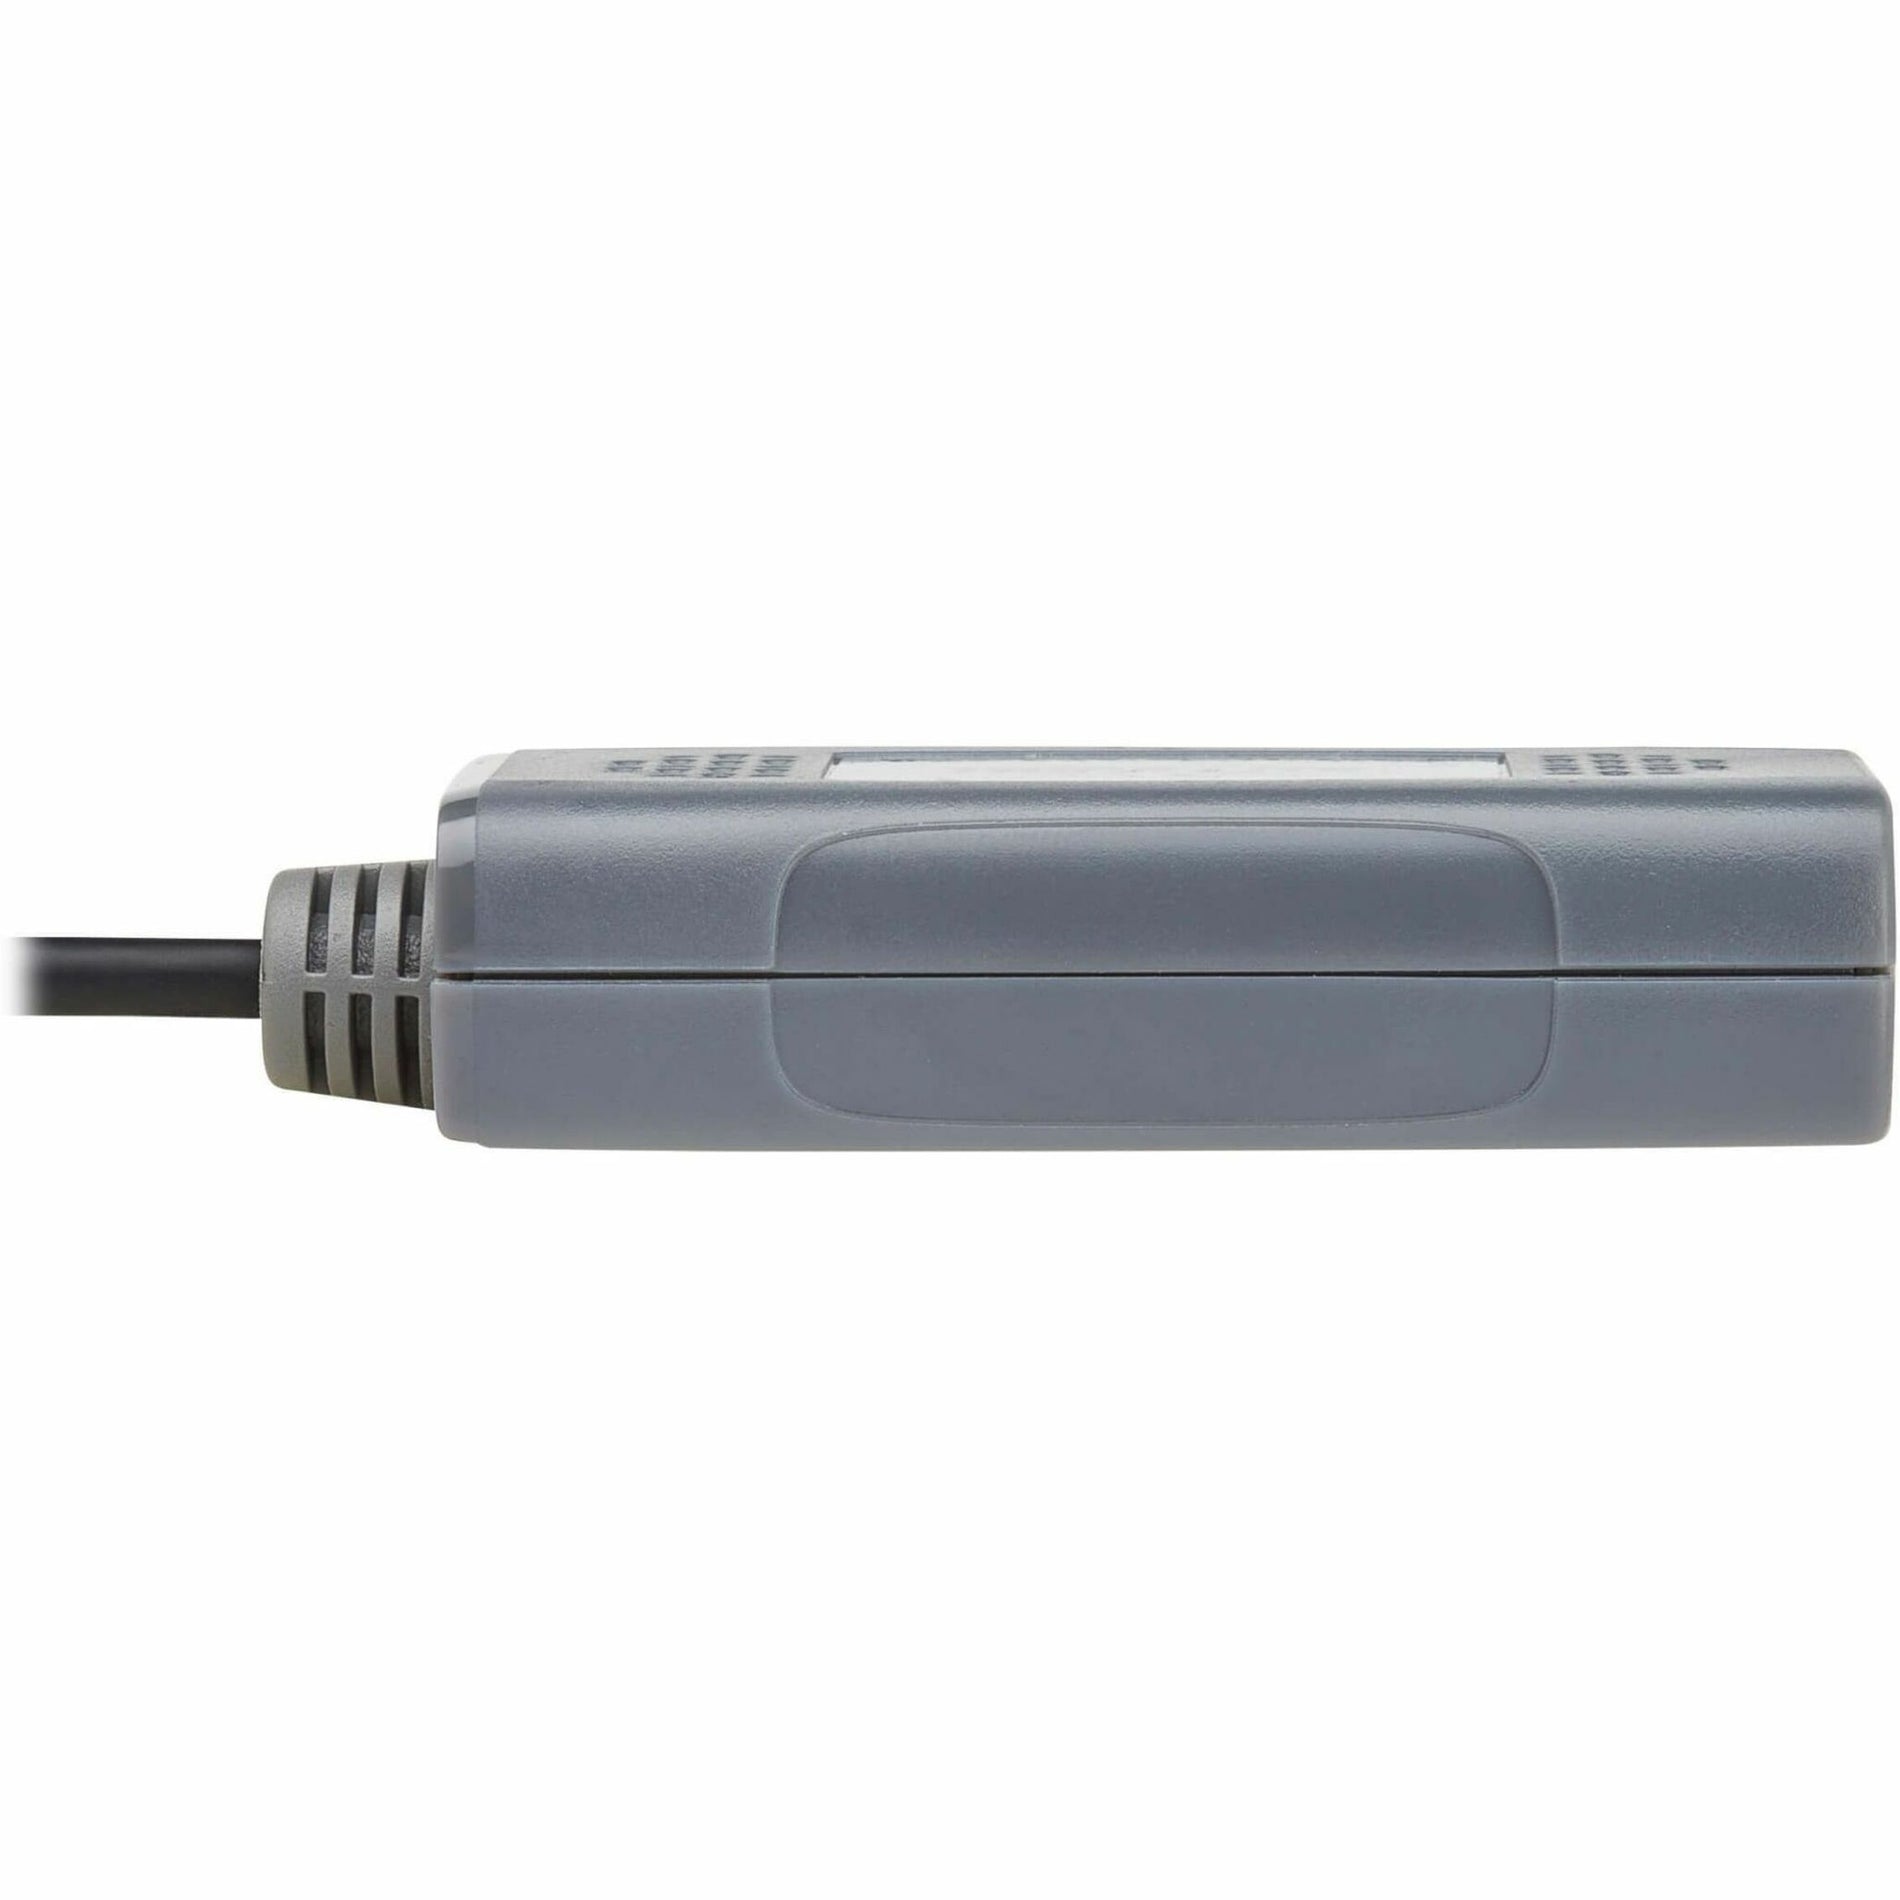 Tripp Lite B127U-111-PHPH Video Extender Transmitter/Receiver, 4K, 3840 x 2160, TAA Compliant, 1 Year Warranty